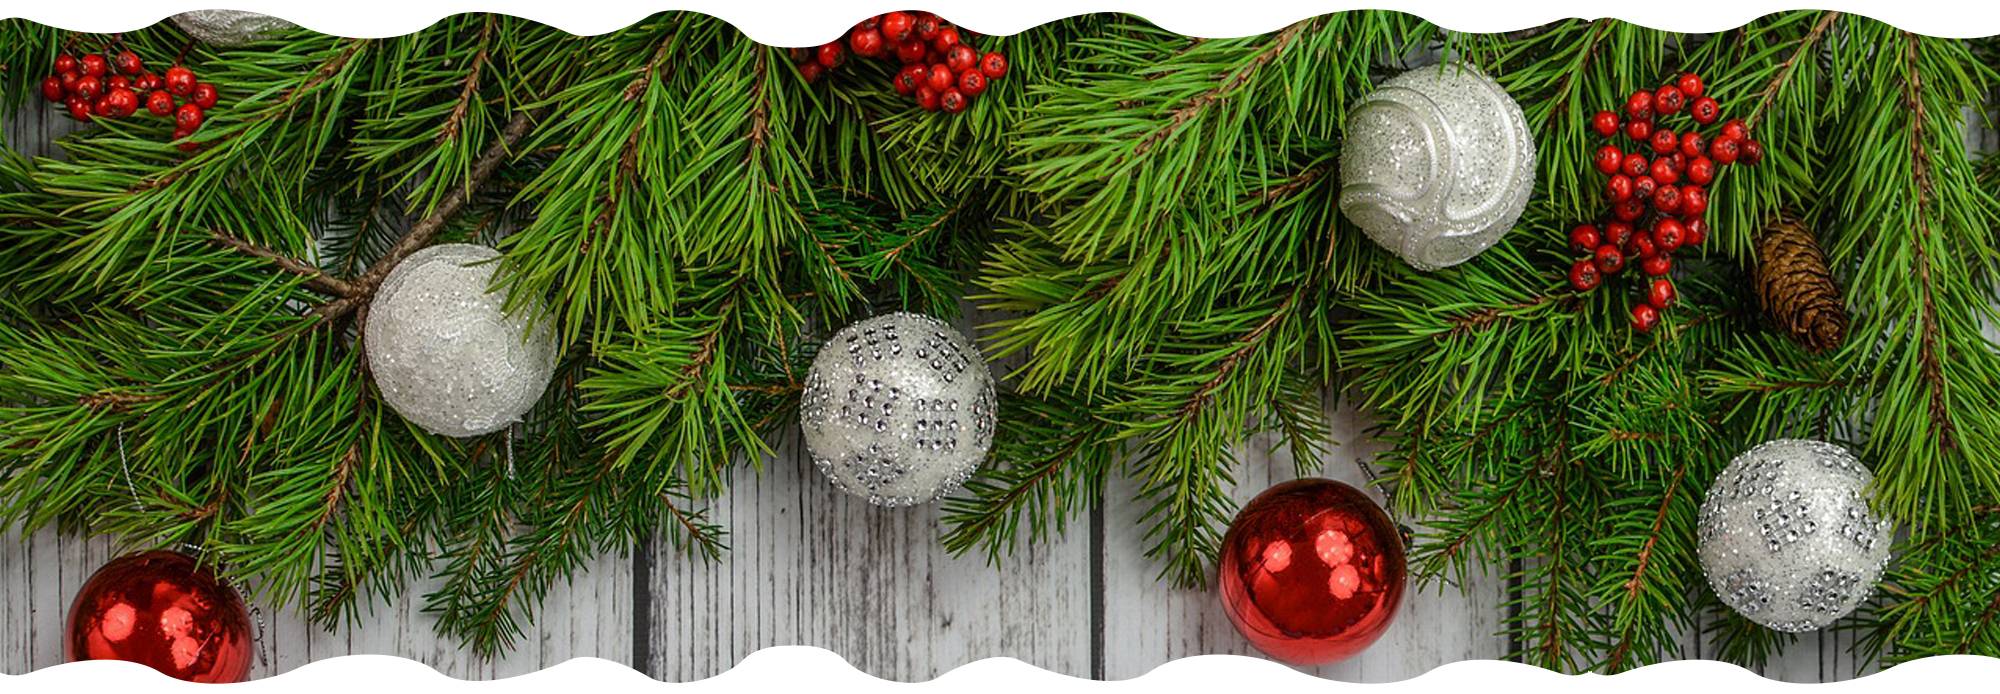 christmas-tree-campaign-gardencenternews-will-do